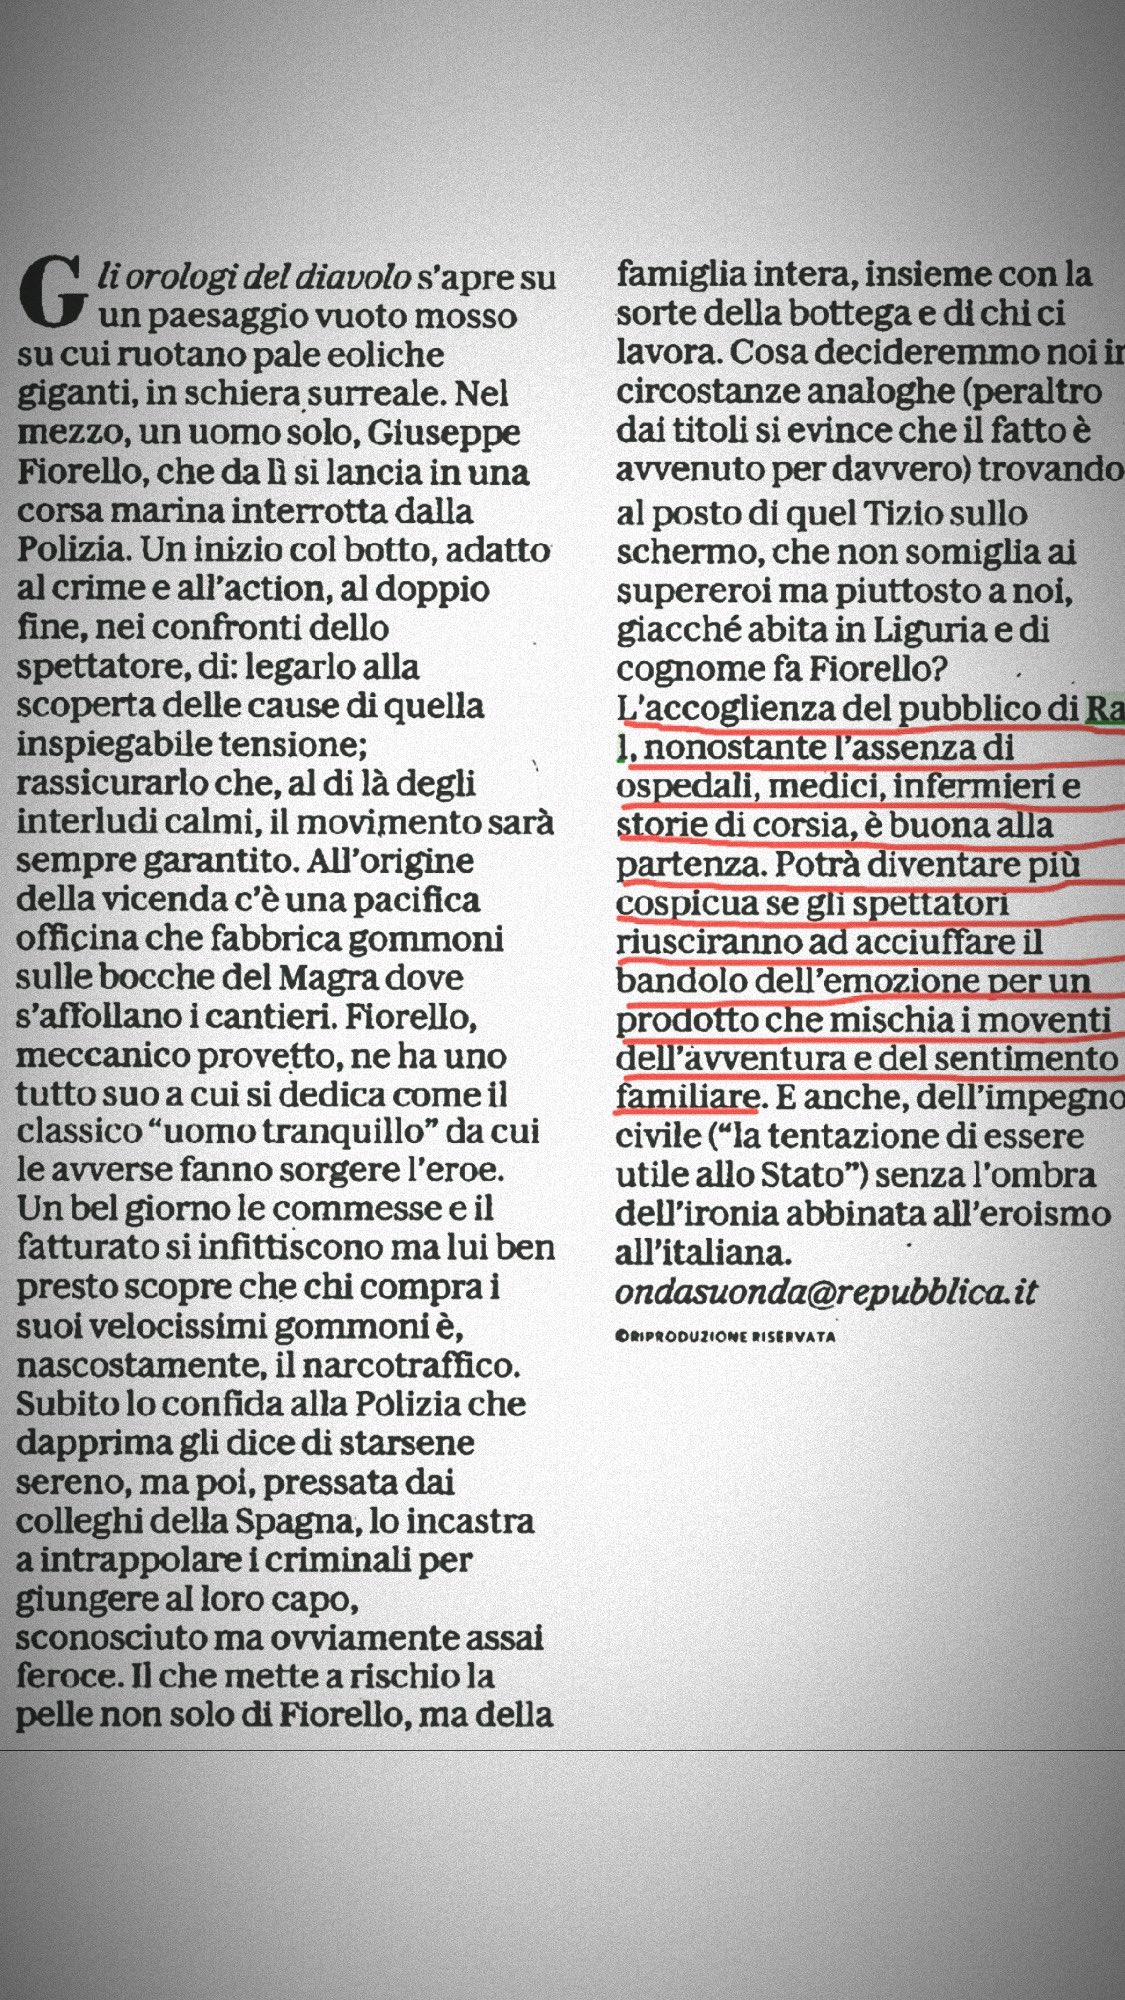 Beppe Fiorello attacca Luca Argentero?